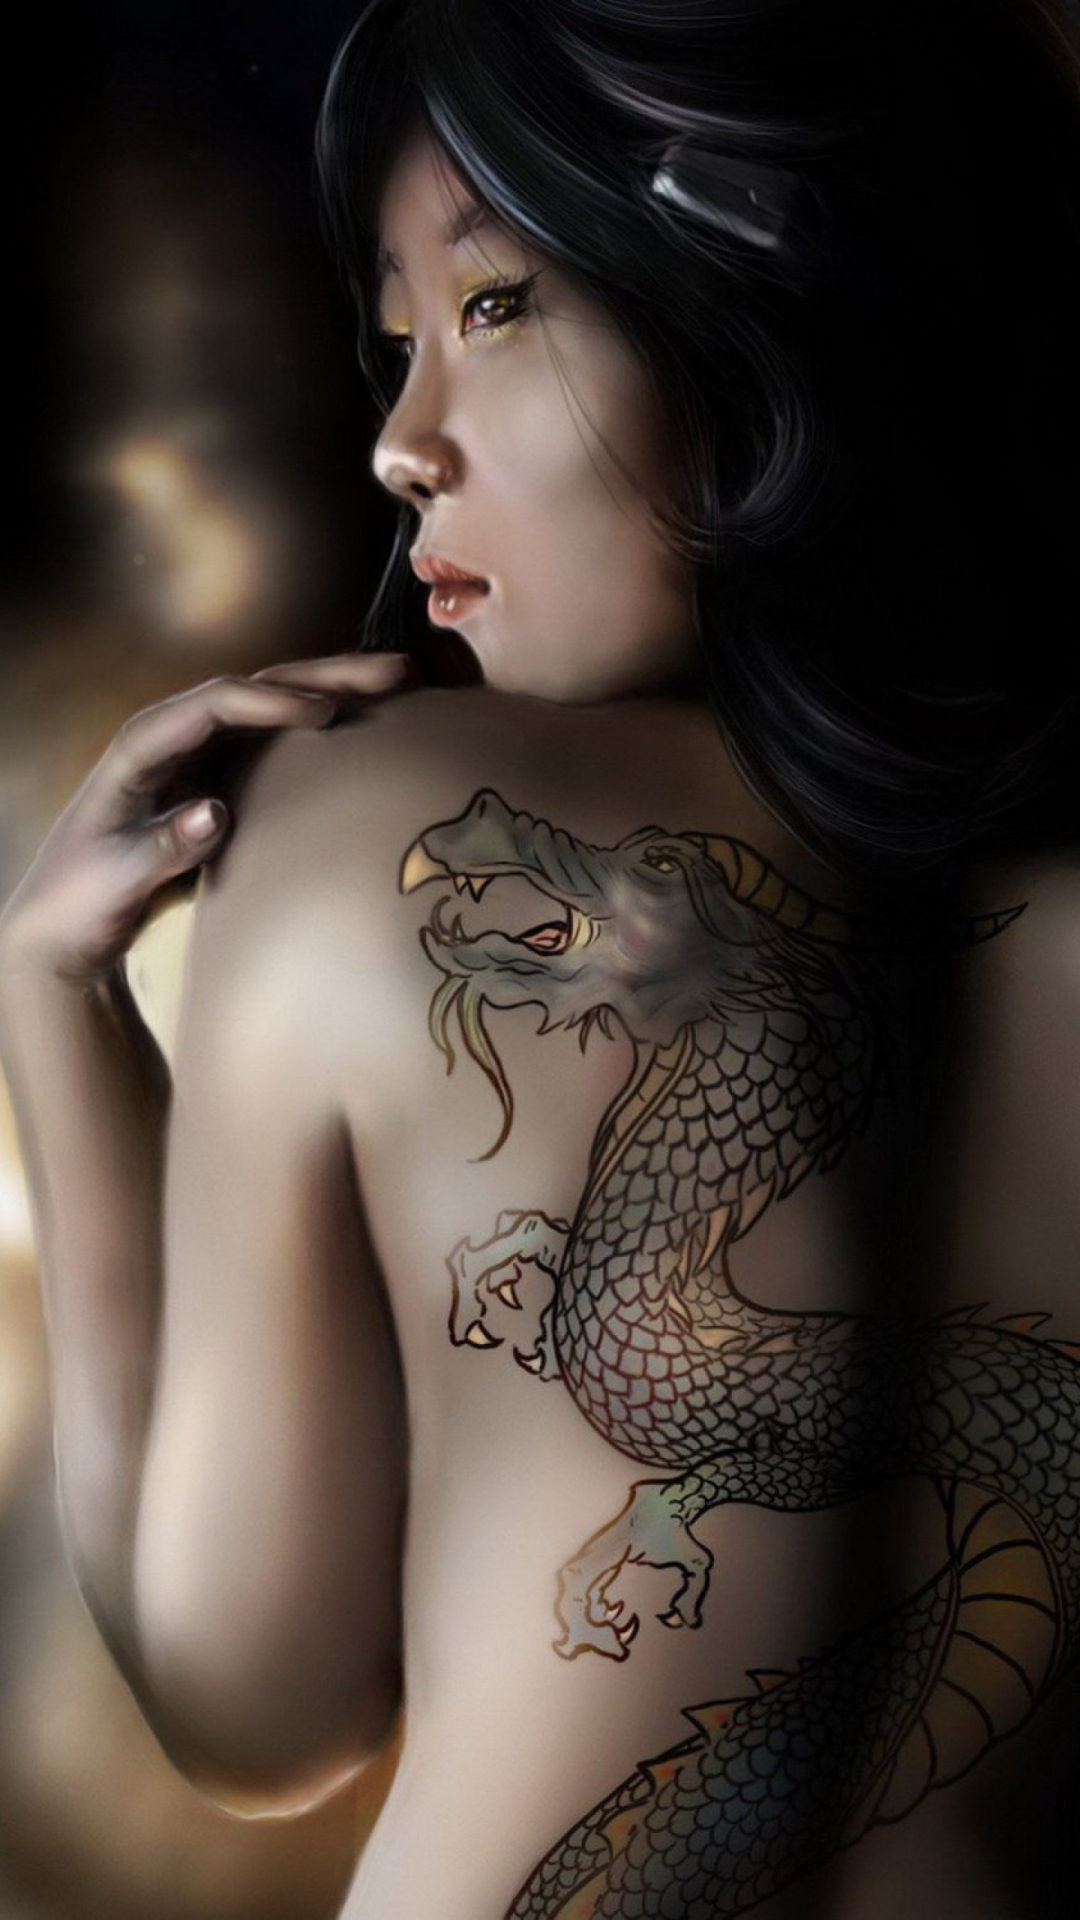 Обои Girl With Dragon Tattoo 1080x1920